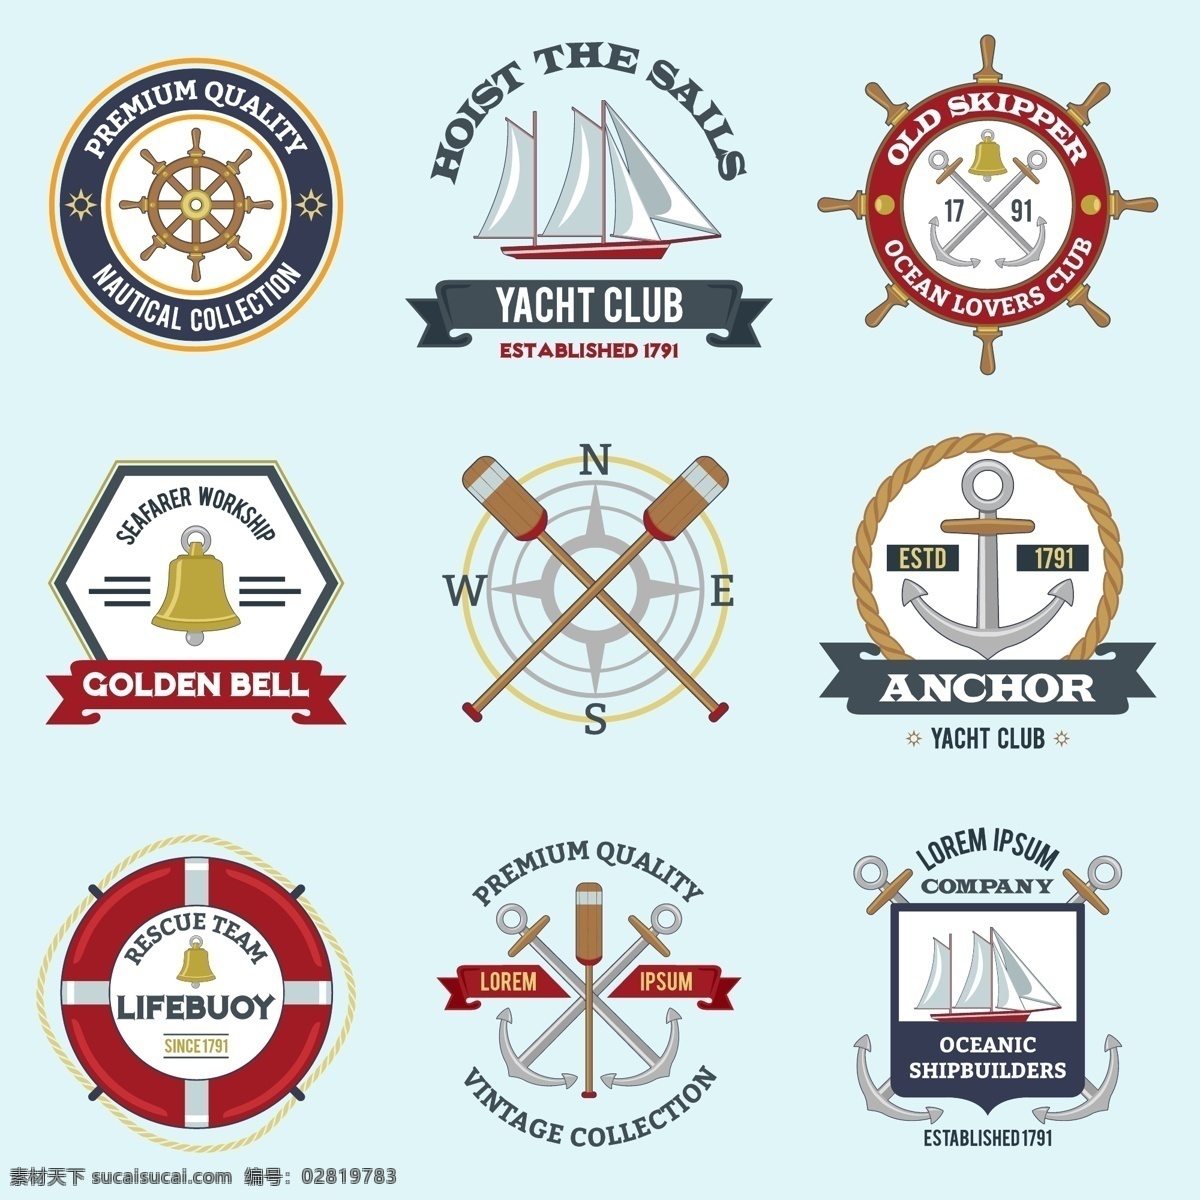 帆船 俱乐部 logo 模板 vi 救生圈 船锚 船桨 船舵 方向舵 铃铛 指南针 标志 标志图标 企业